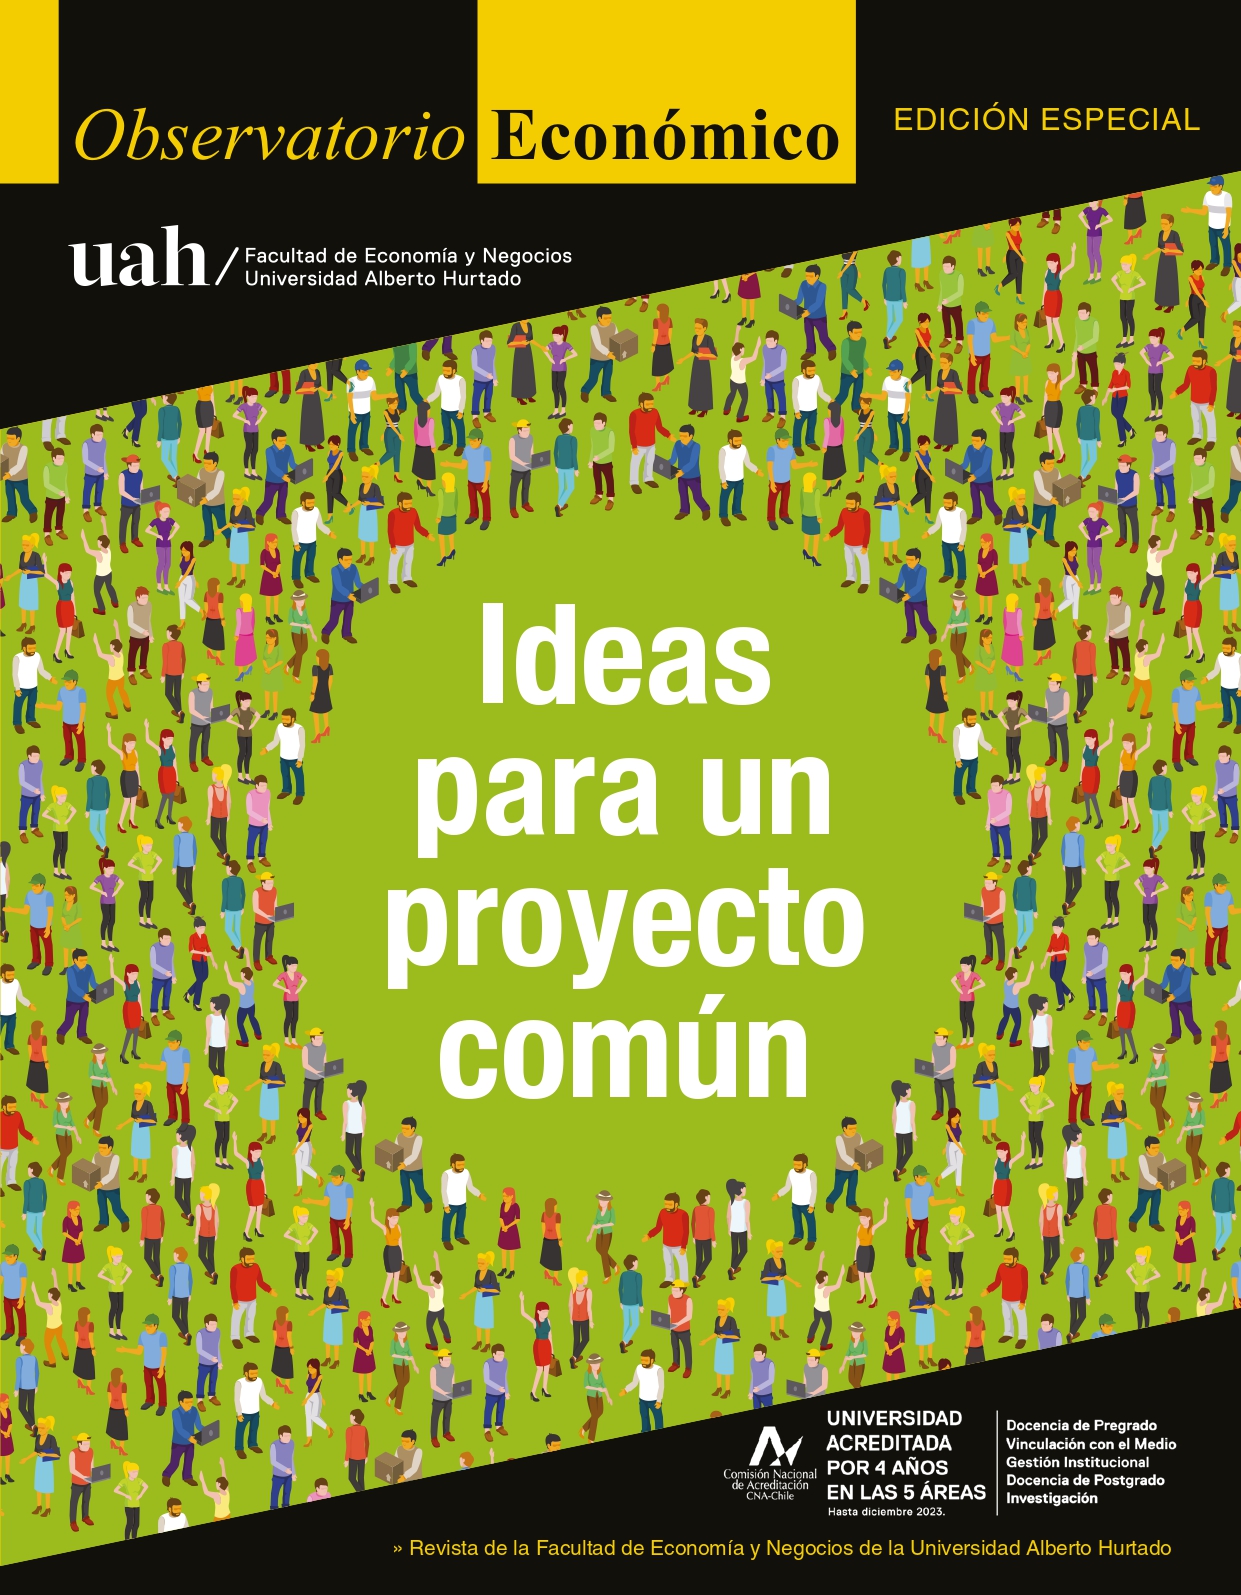 					Ver 2020: Edición Especial: Ideas para un proyecto común
				